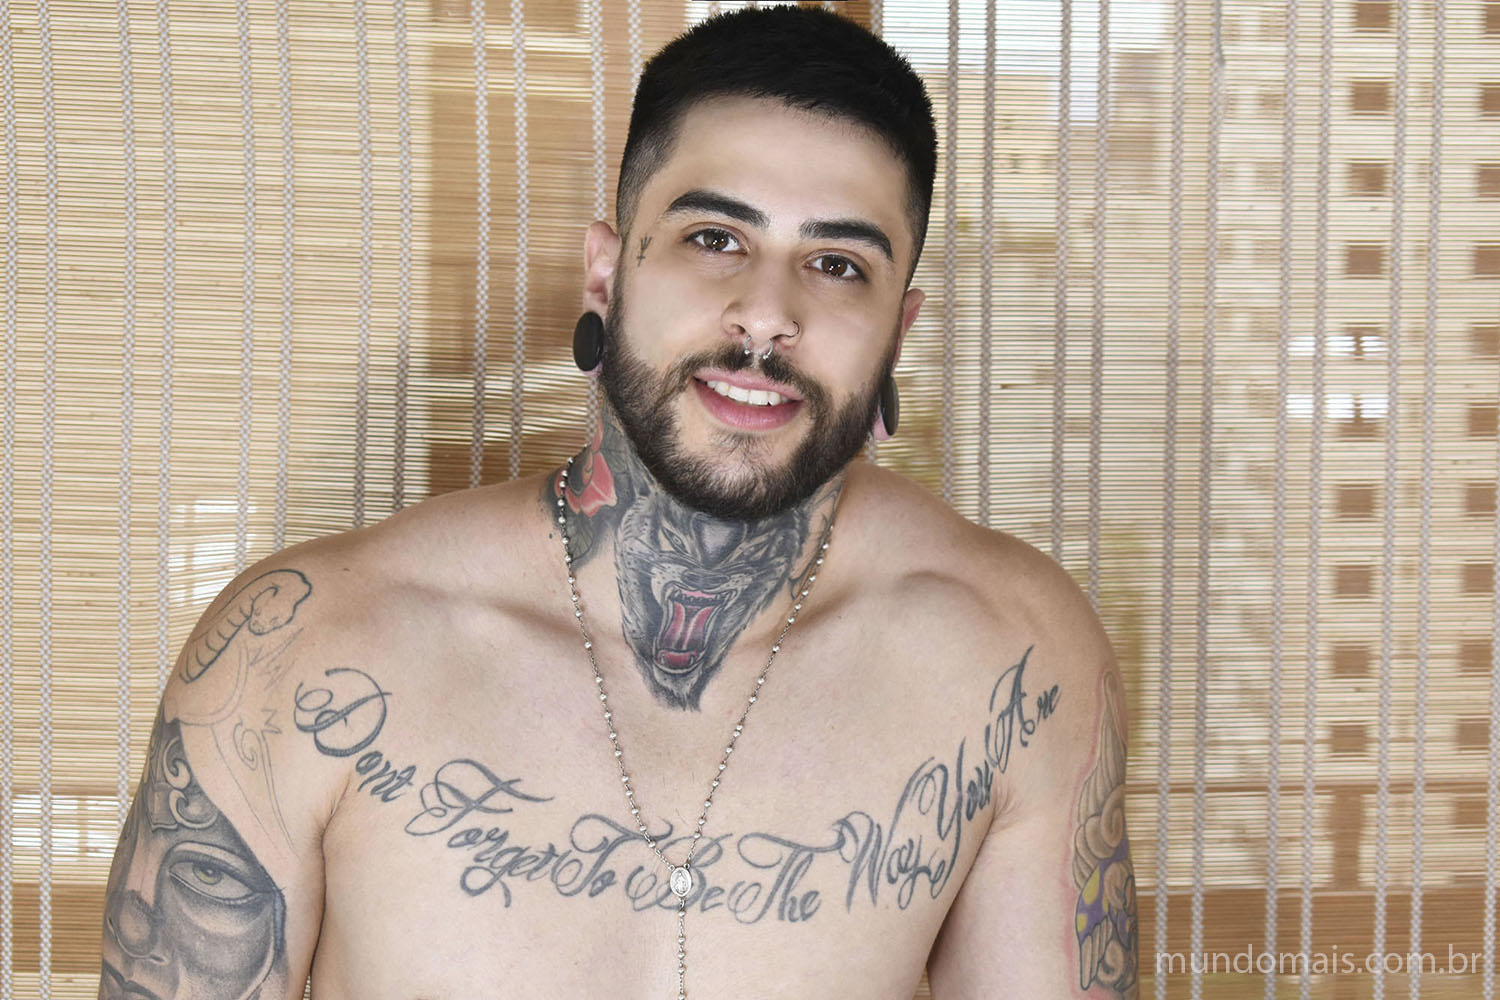 Matheus Castro nude photos